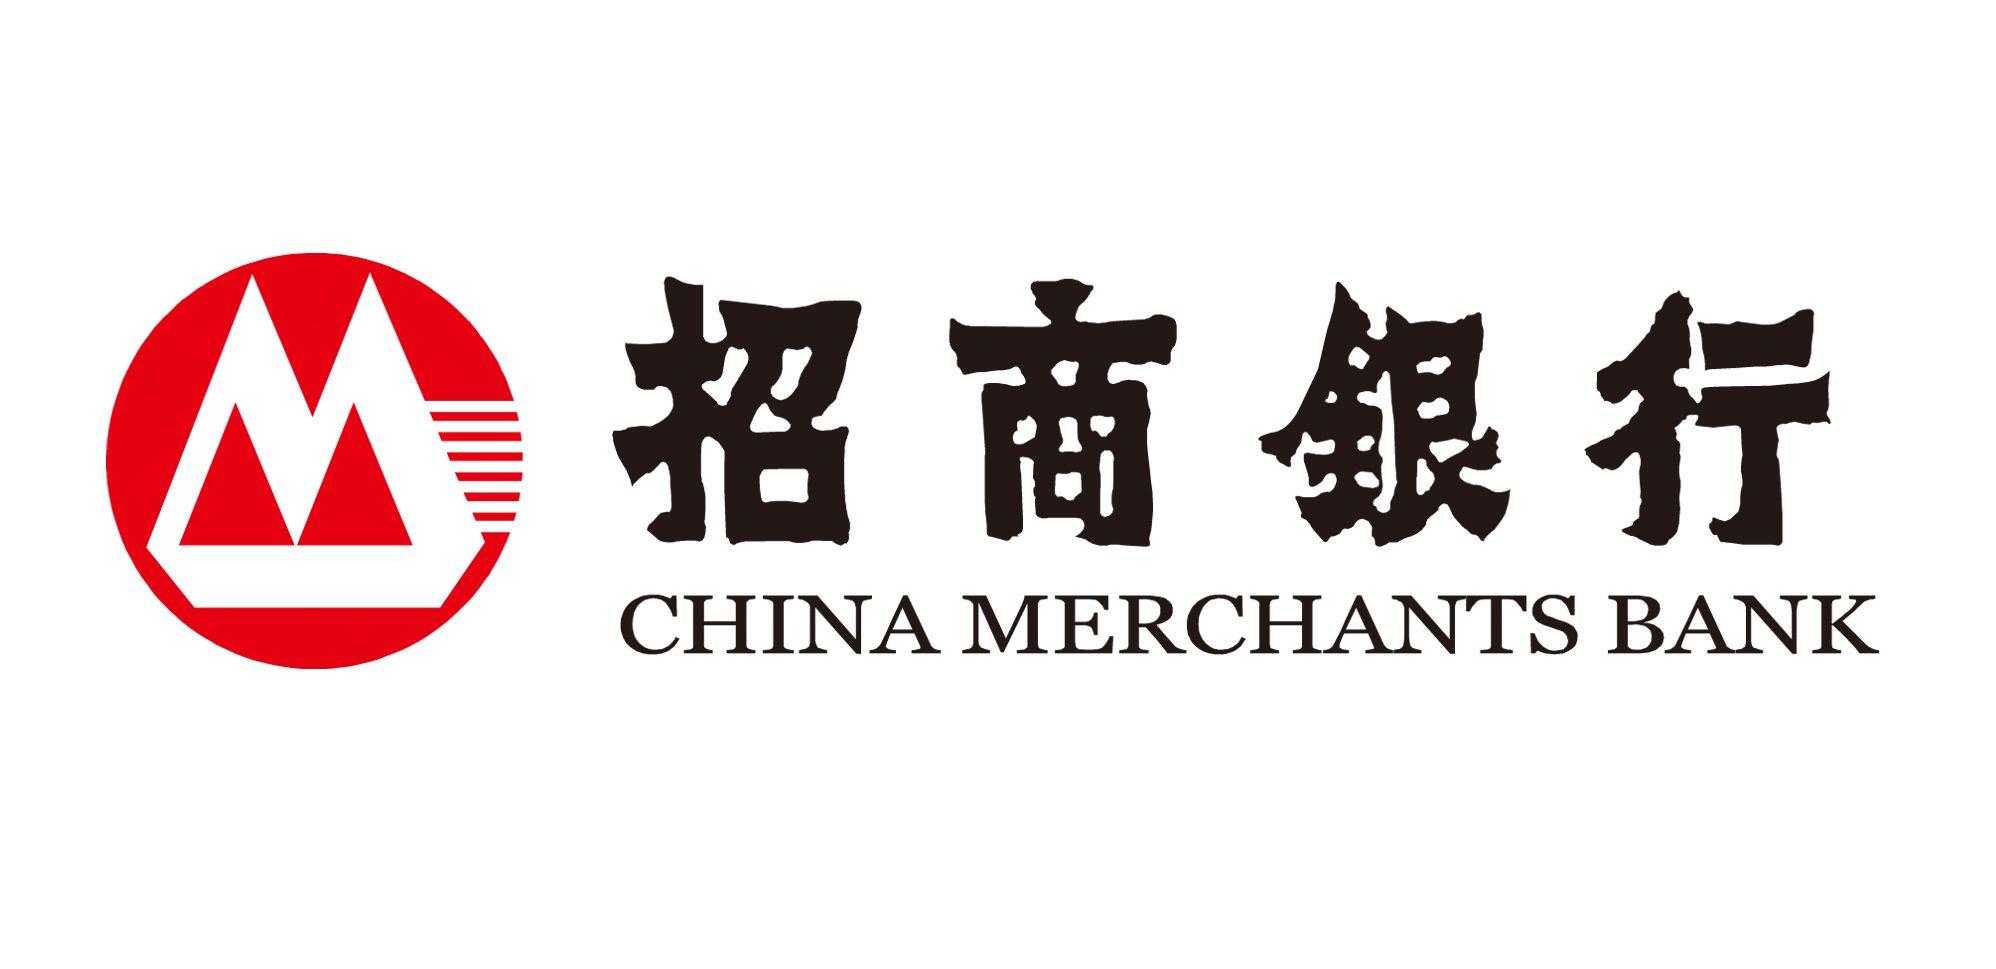 CMB Logo - China Merchants Bank (CMB) - China Banks